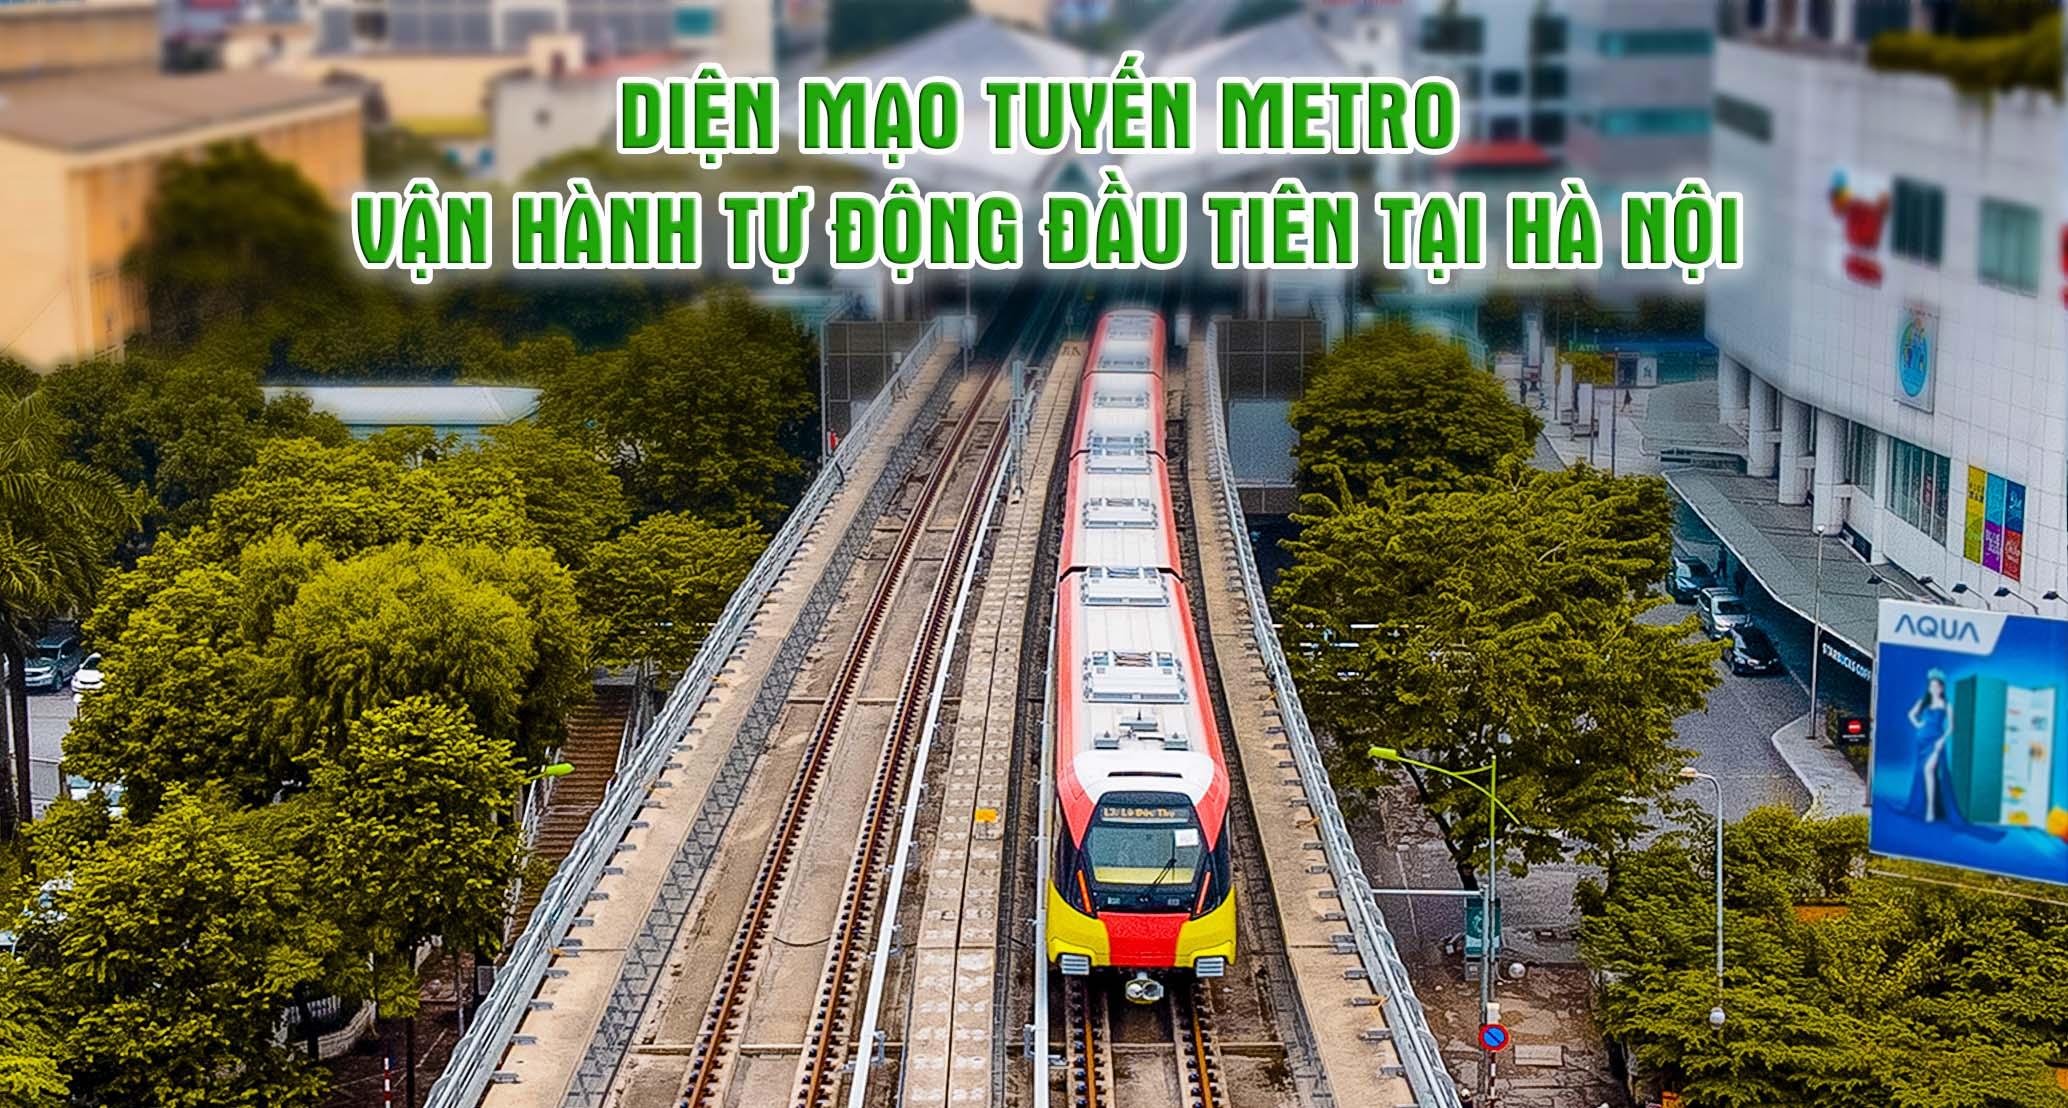 Diện mạo tuyến metro vận hành tự động đầu tiên tại Hà Nội